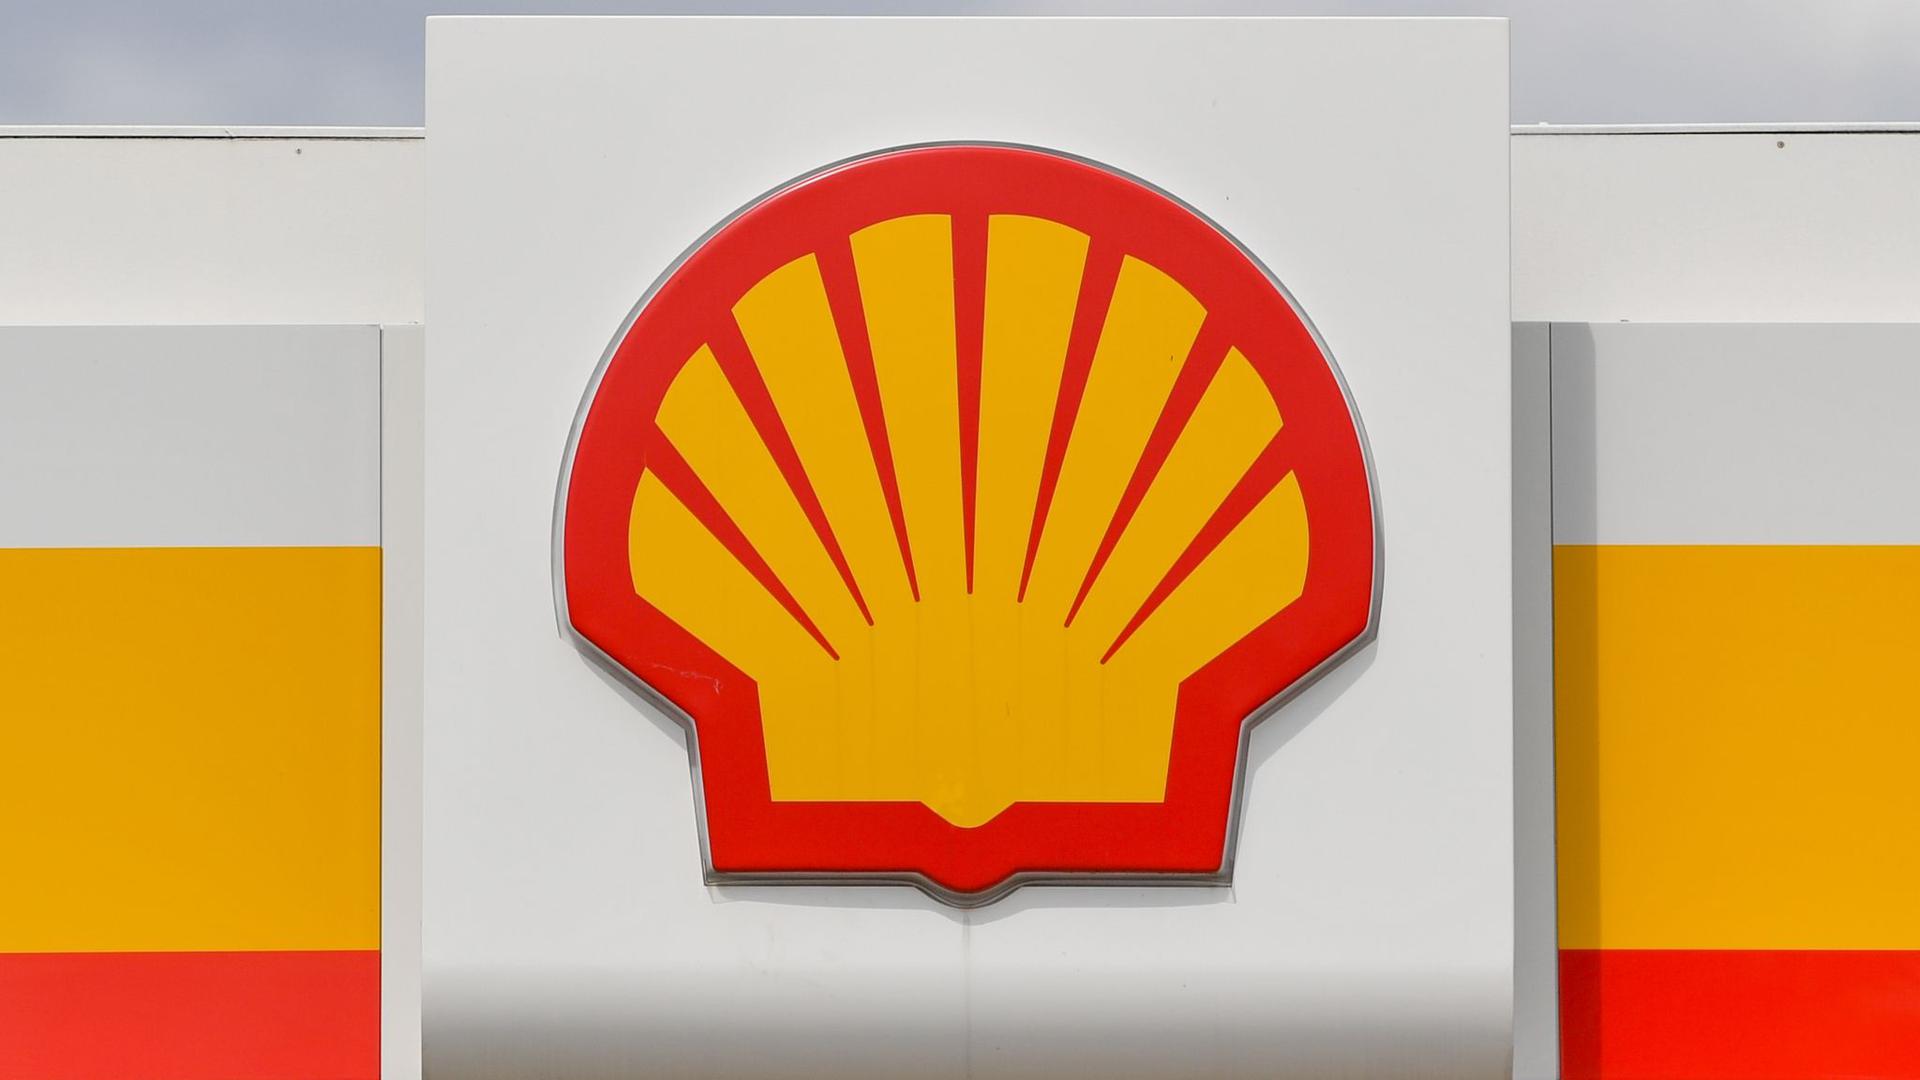 Der Öl- und Erdgaskonzern Shell hat eine historische Schlappe erlitten und muss nach einem Gerichtsurteil seine Kohlendioxid-Emissionen drastisch senken.